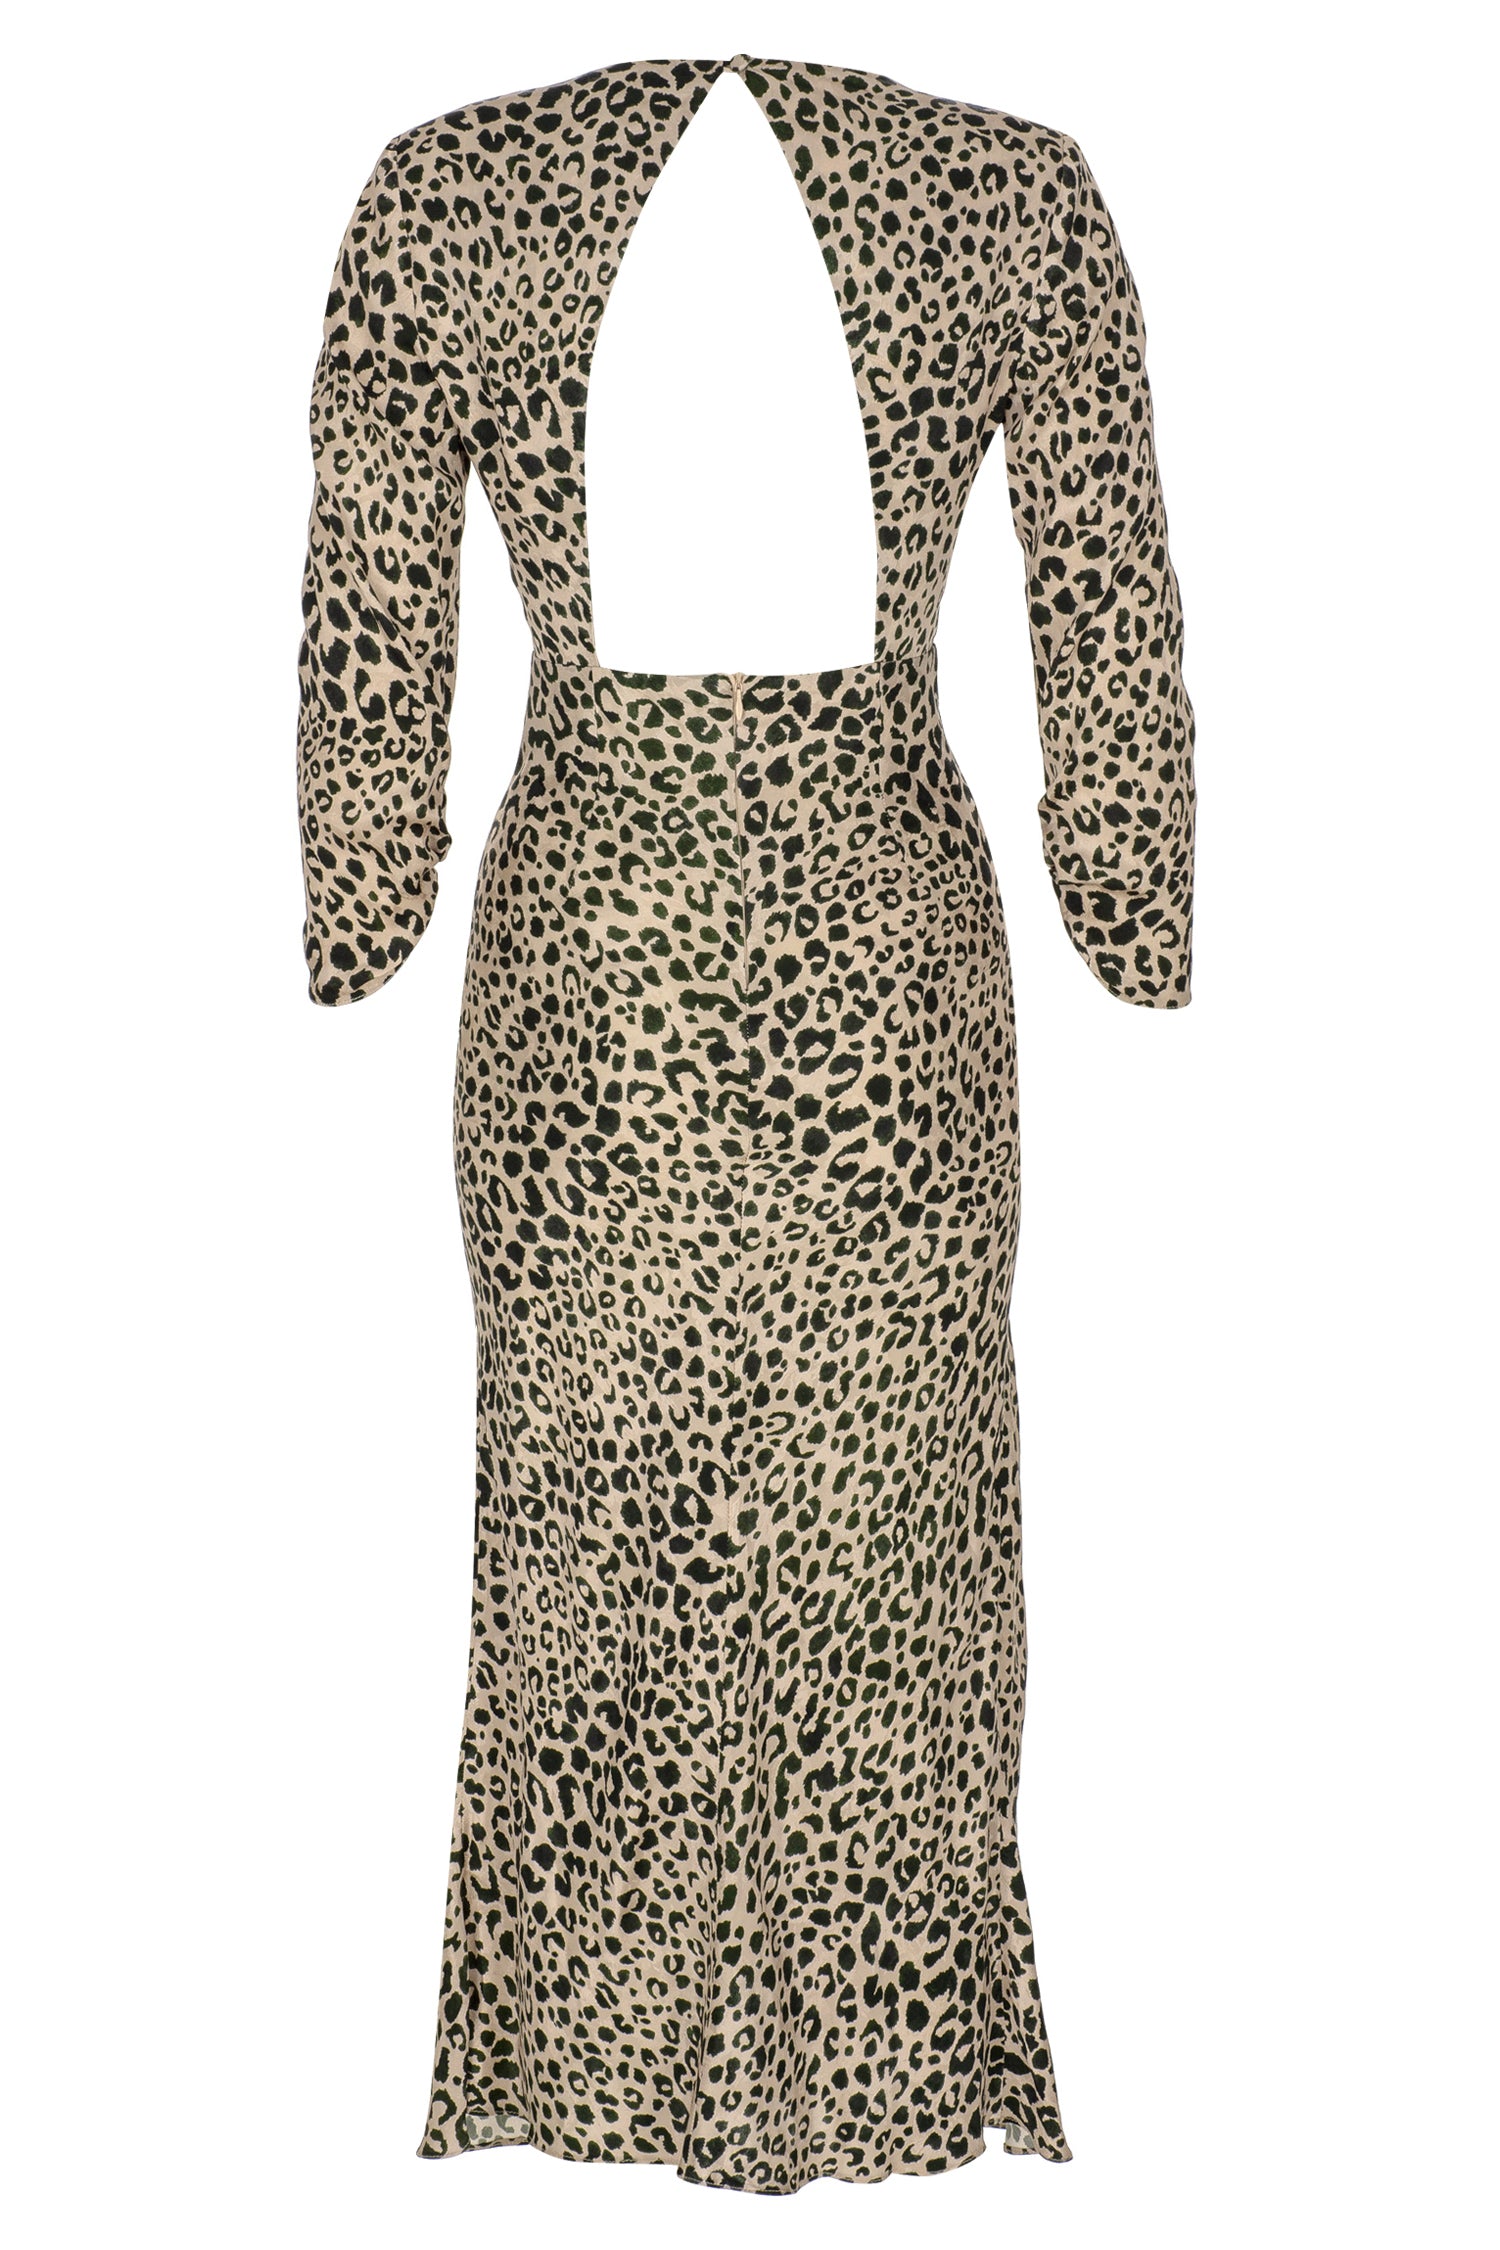 Roma Dress in Leopard